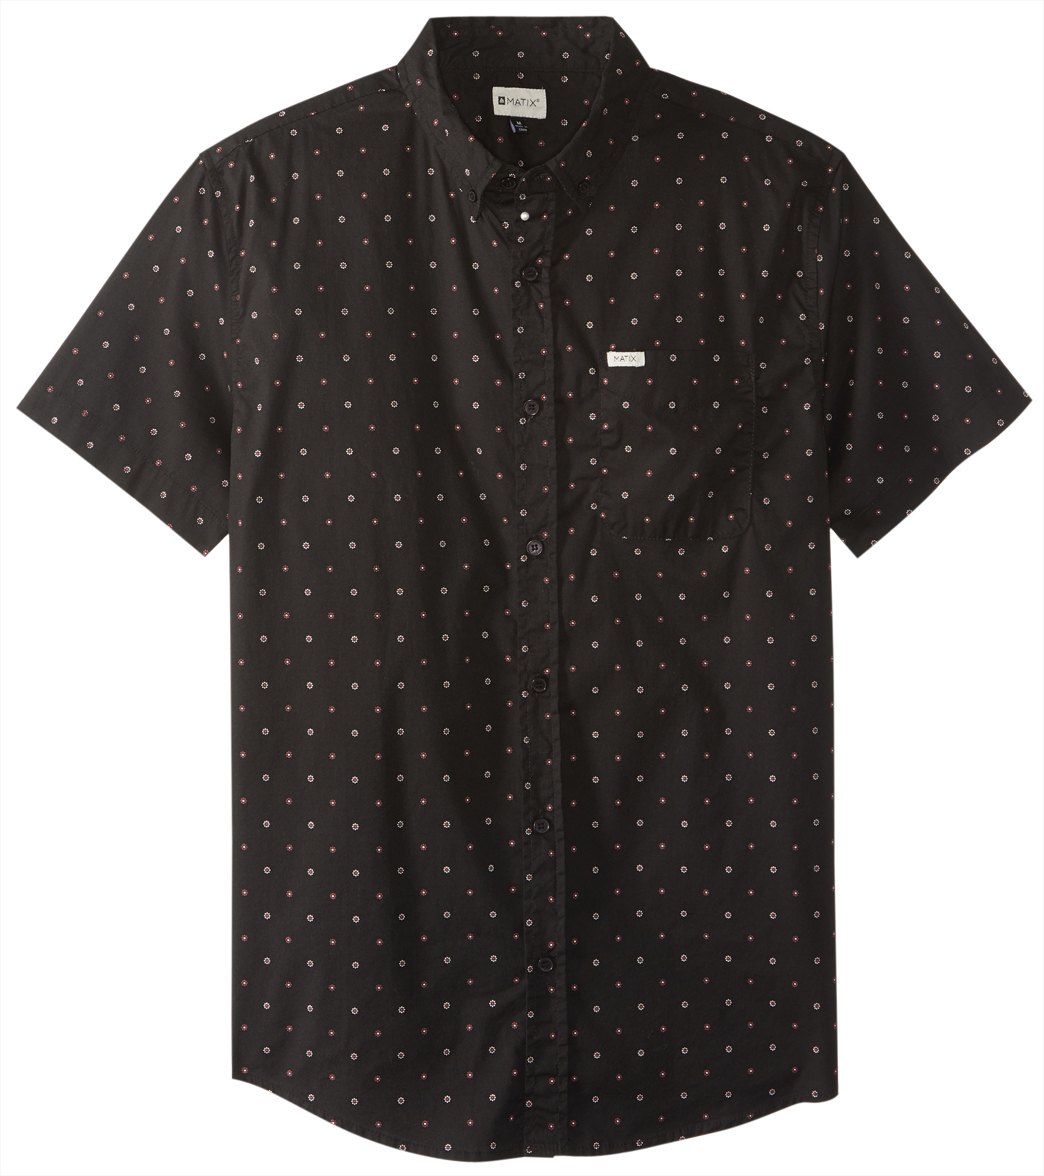 Matix Men's Pierce Short Sleeve Shirt - Black Small Cotton - Swimoutlet.com